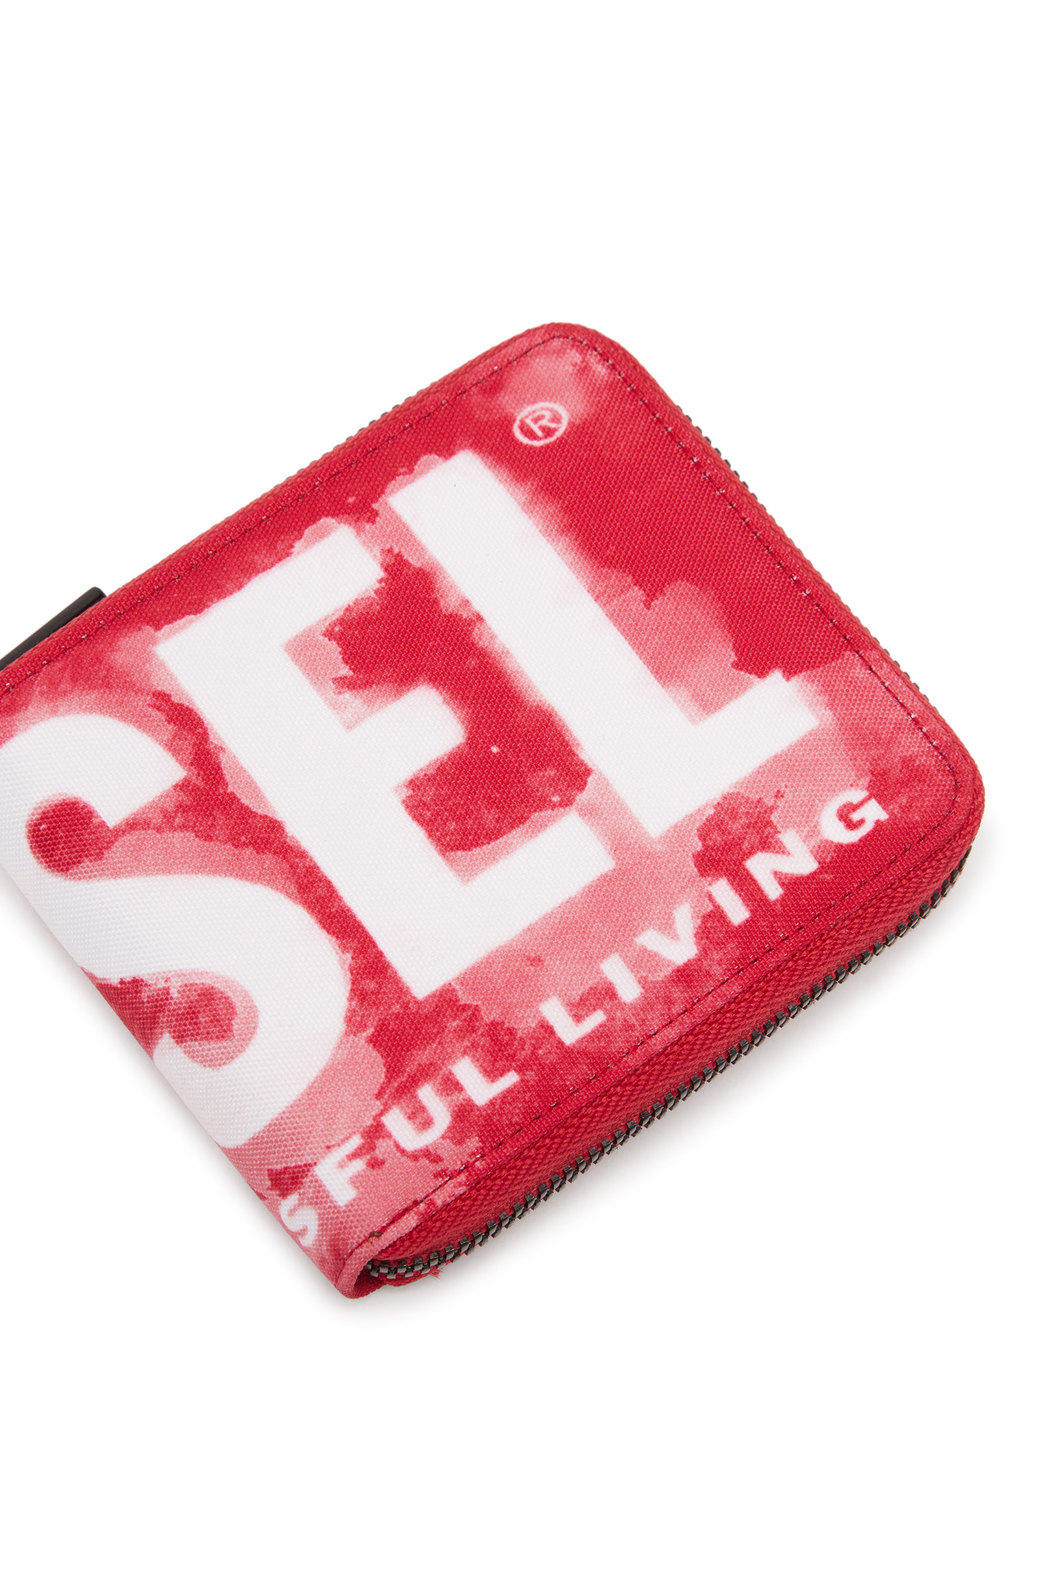 Zip wallet in logo-print fabric